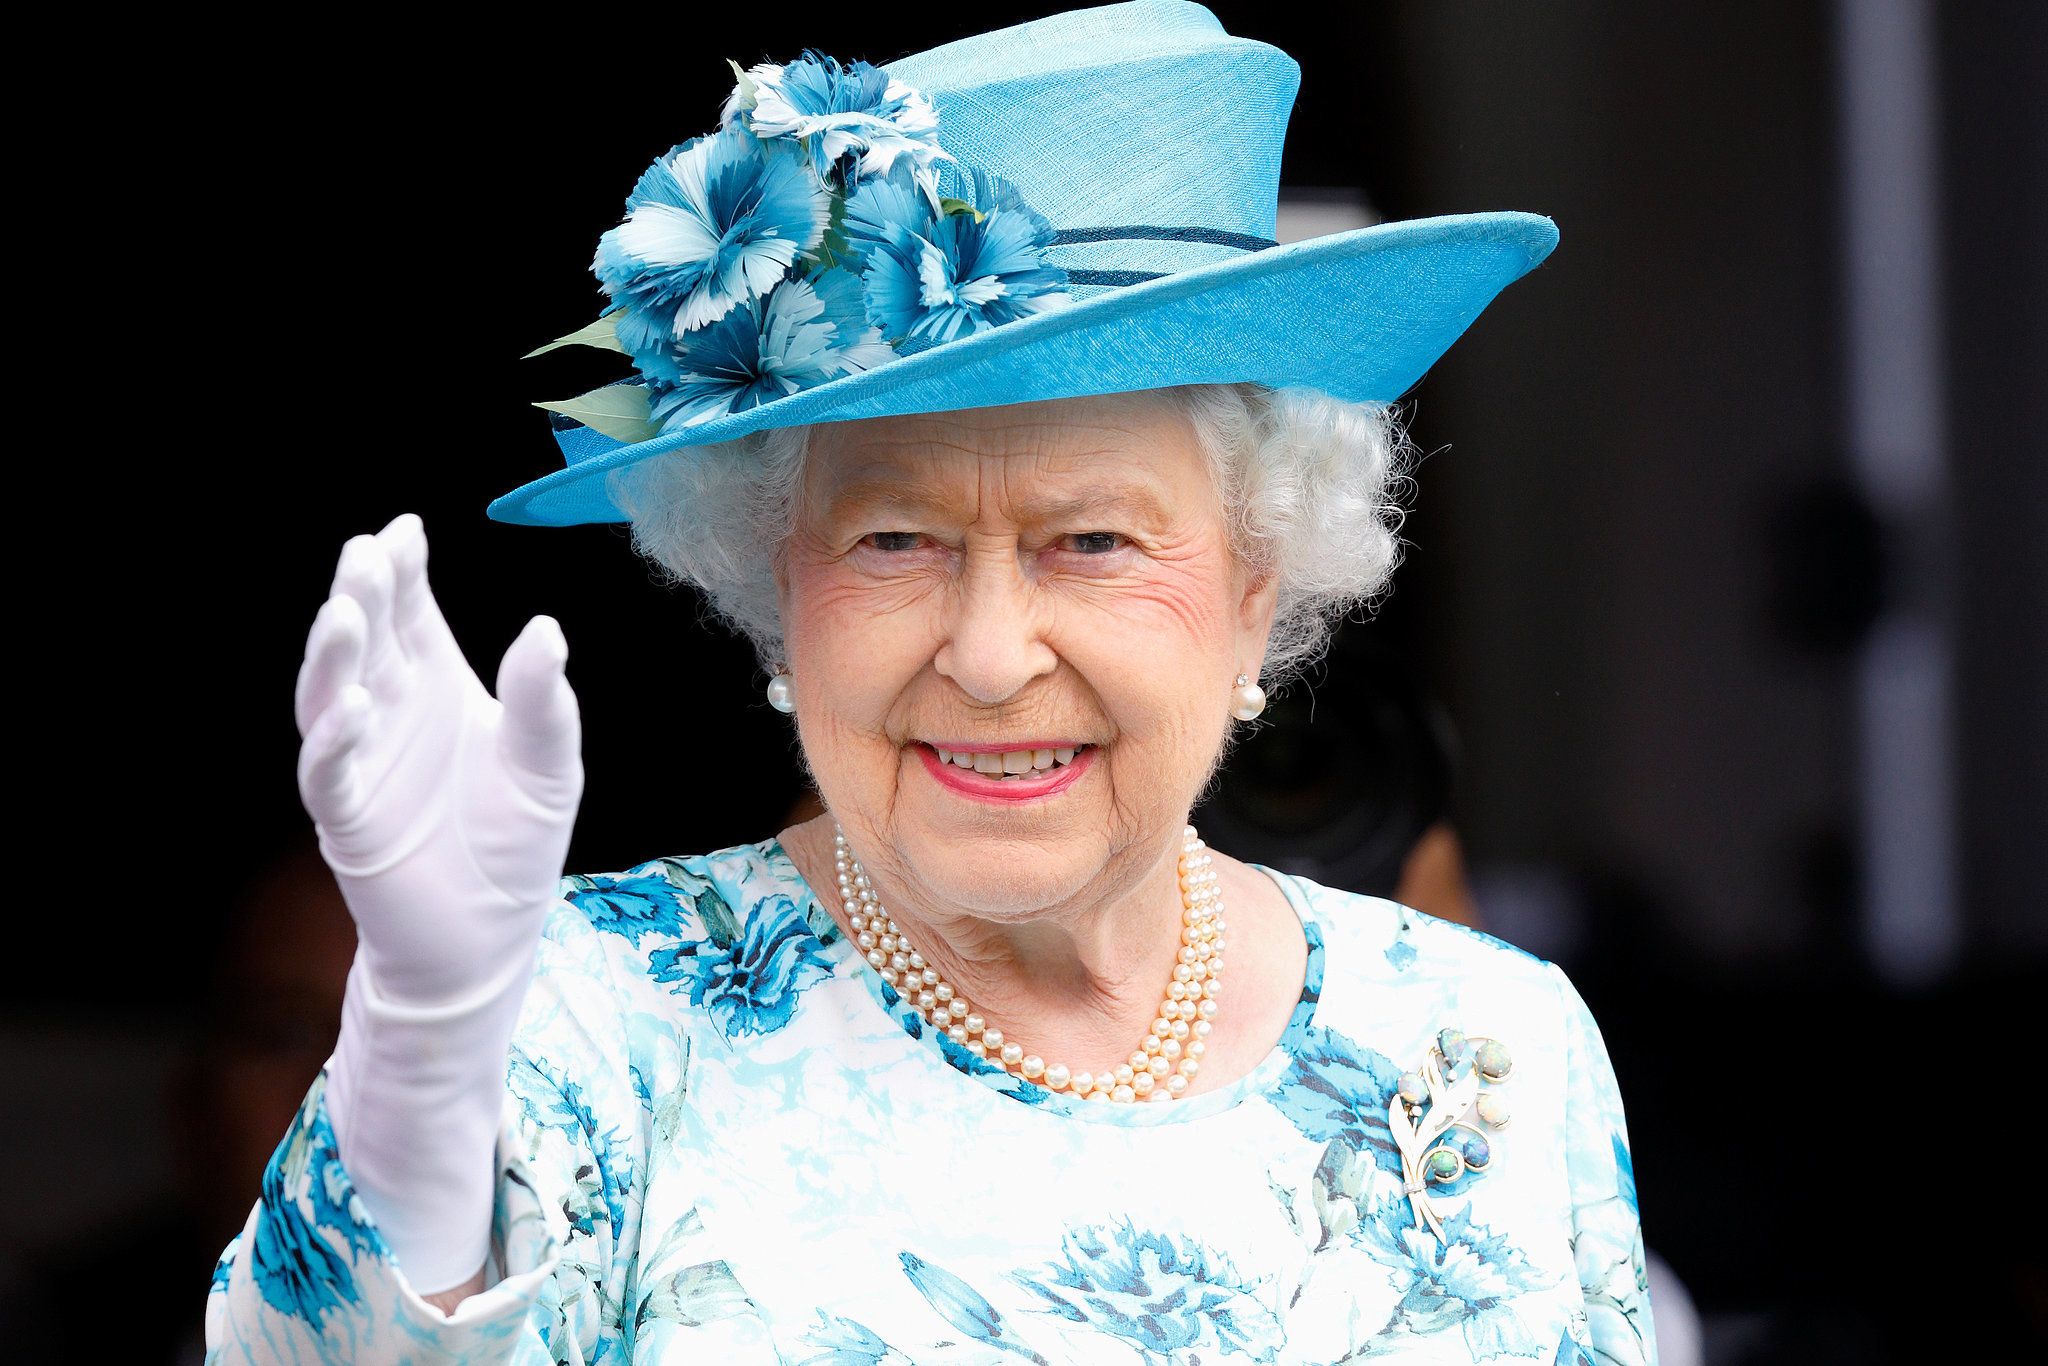 Perché la Regina Elisabetta II veste sempre quei colori brillanti?